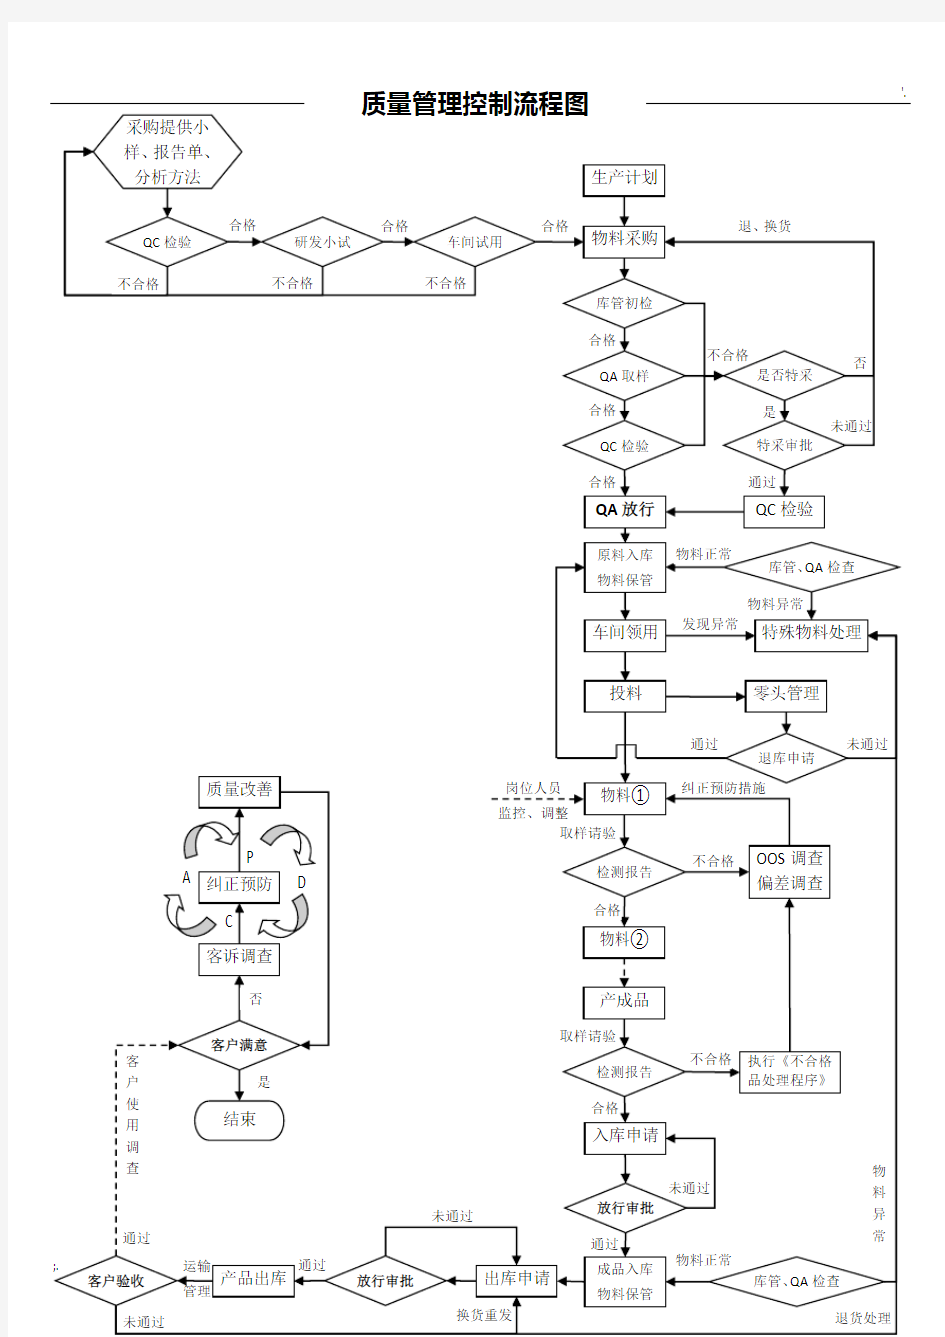 产品质量控制流程图 (全图)